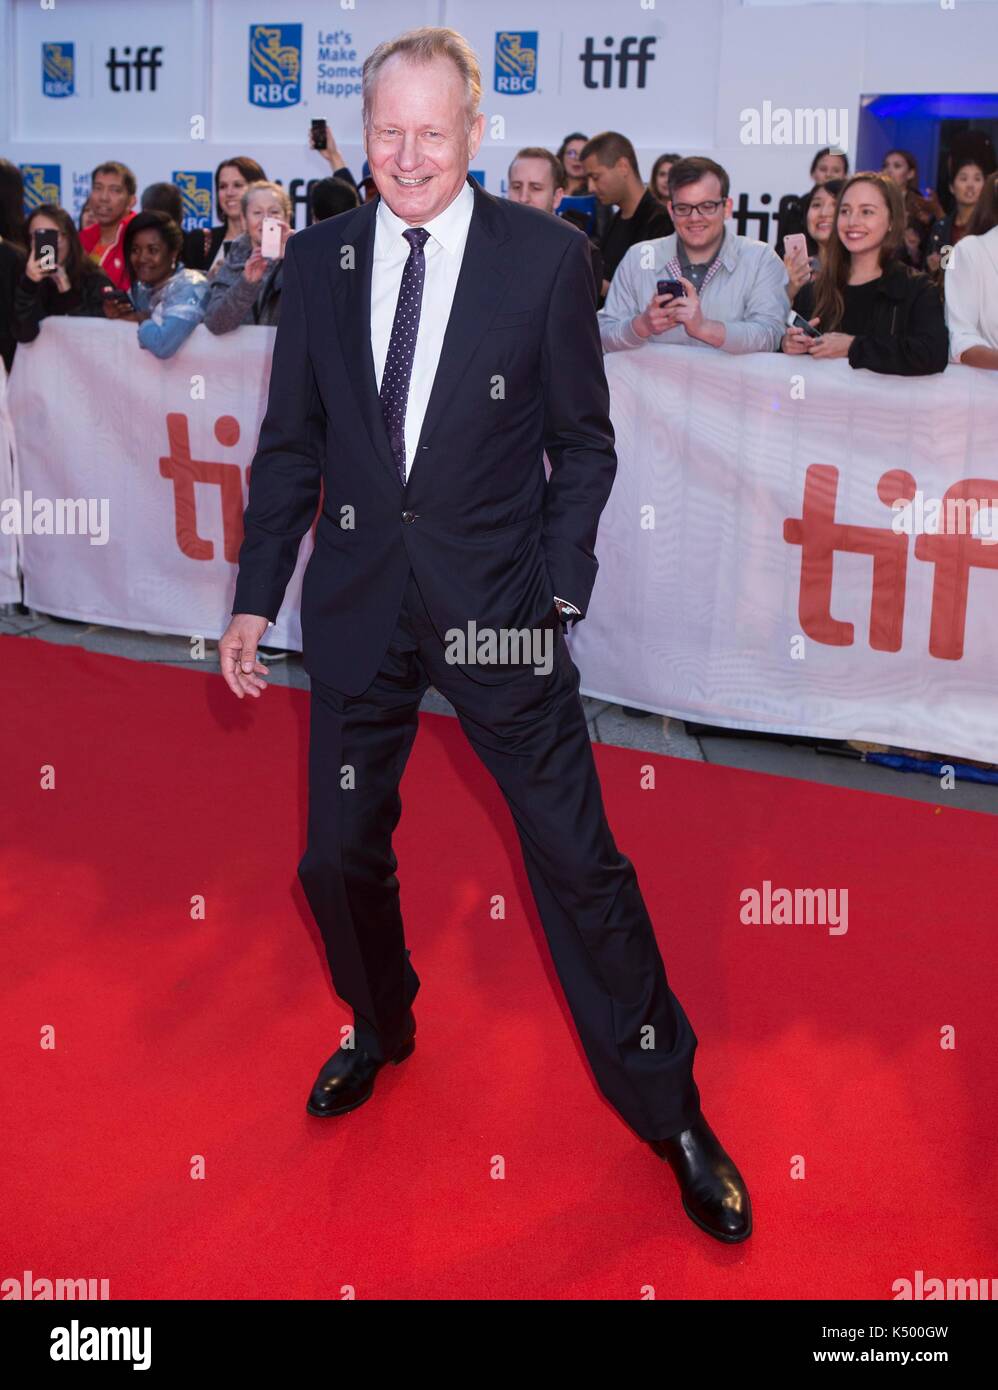 Toronto, Canada. 30Th jun 2017. acteur Stellan Skarsgard assiste à la première du film 'borg/mcenroe' au cours de la 2017 Toronto International Film Festival de Toronto, Canada, sept. 7, 2017. La 2017 festival international du film de Toronto (TIFF) a débuté jeudi avec quelque 340 films à l'écran lors de l'événement, qui se déroule jusqu'au 17 septembre. crédit : zou zheng/Xinhua/Alamy live news Banque D'Images